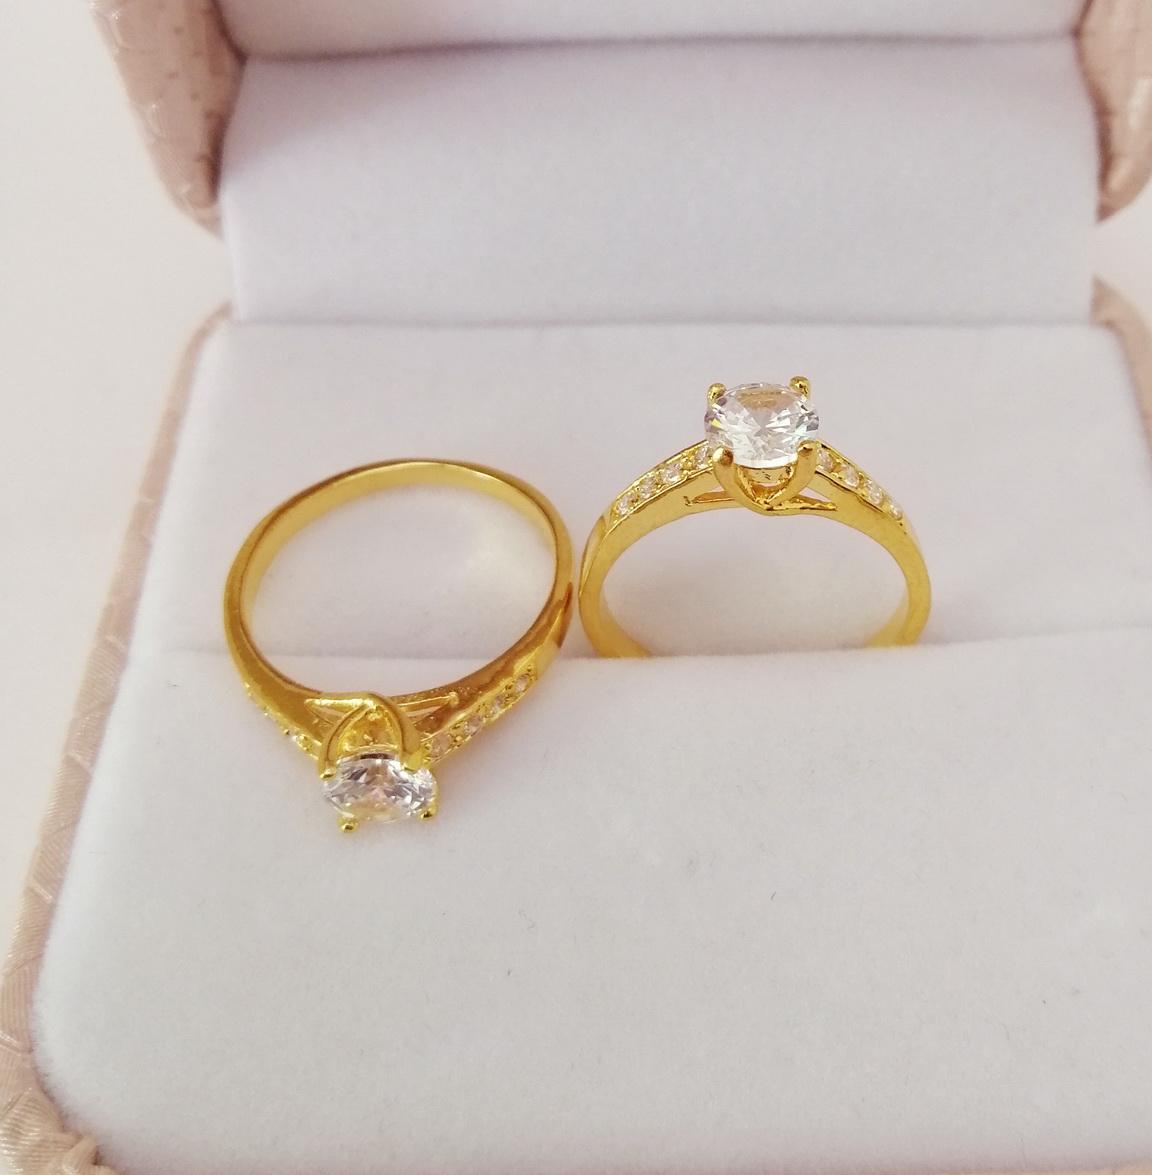 แหวนชูดีไซน์คลาสสิค ประดับเพชร แหวนผู้หญิง แหวนคู่ แหวนคู่รัก เครื่องประดับ แหวนทองผู้หญิง รุ่น A13 แหวนแฟชั่น